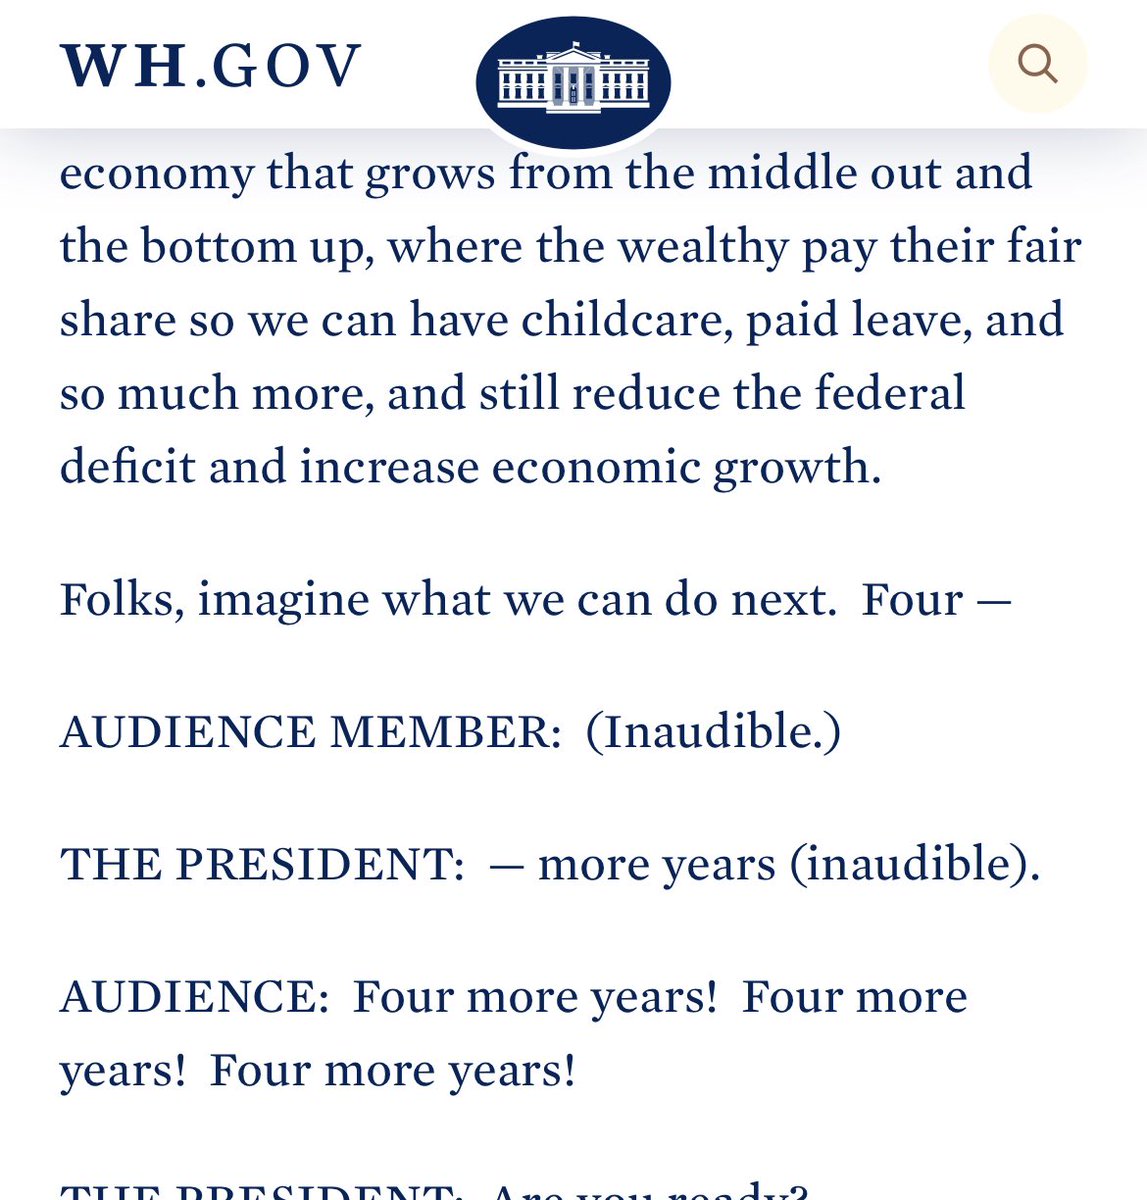 La Casa Blanca para tapar los errores de Biden, publica la transcripción del discurso 'inaudible', pese a que Biden claramente dijo 'pausa', siguiendo el teleprompter. Vergonzoso.